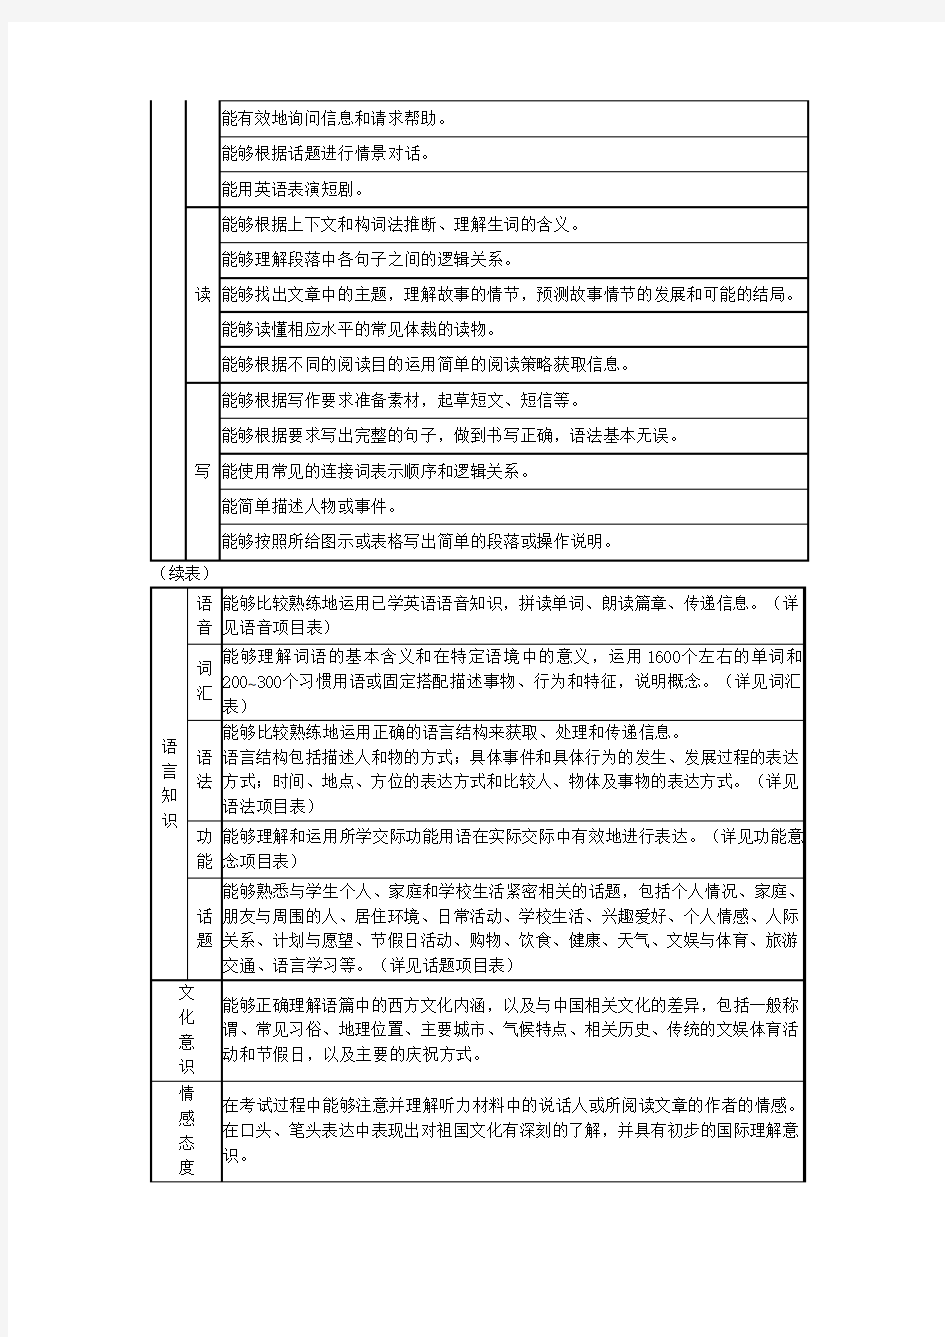 2018年广东省初中毕业生英语学科学业考试大纲(含词汇表)